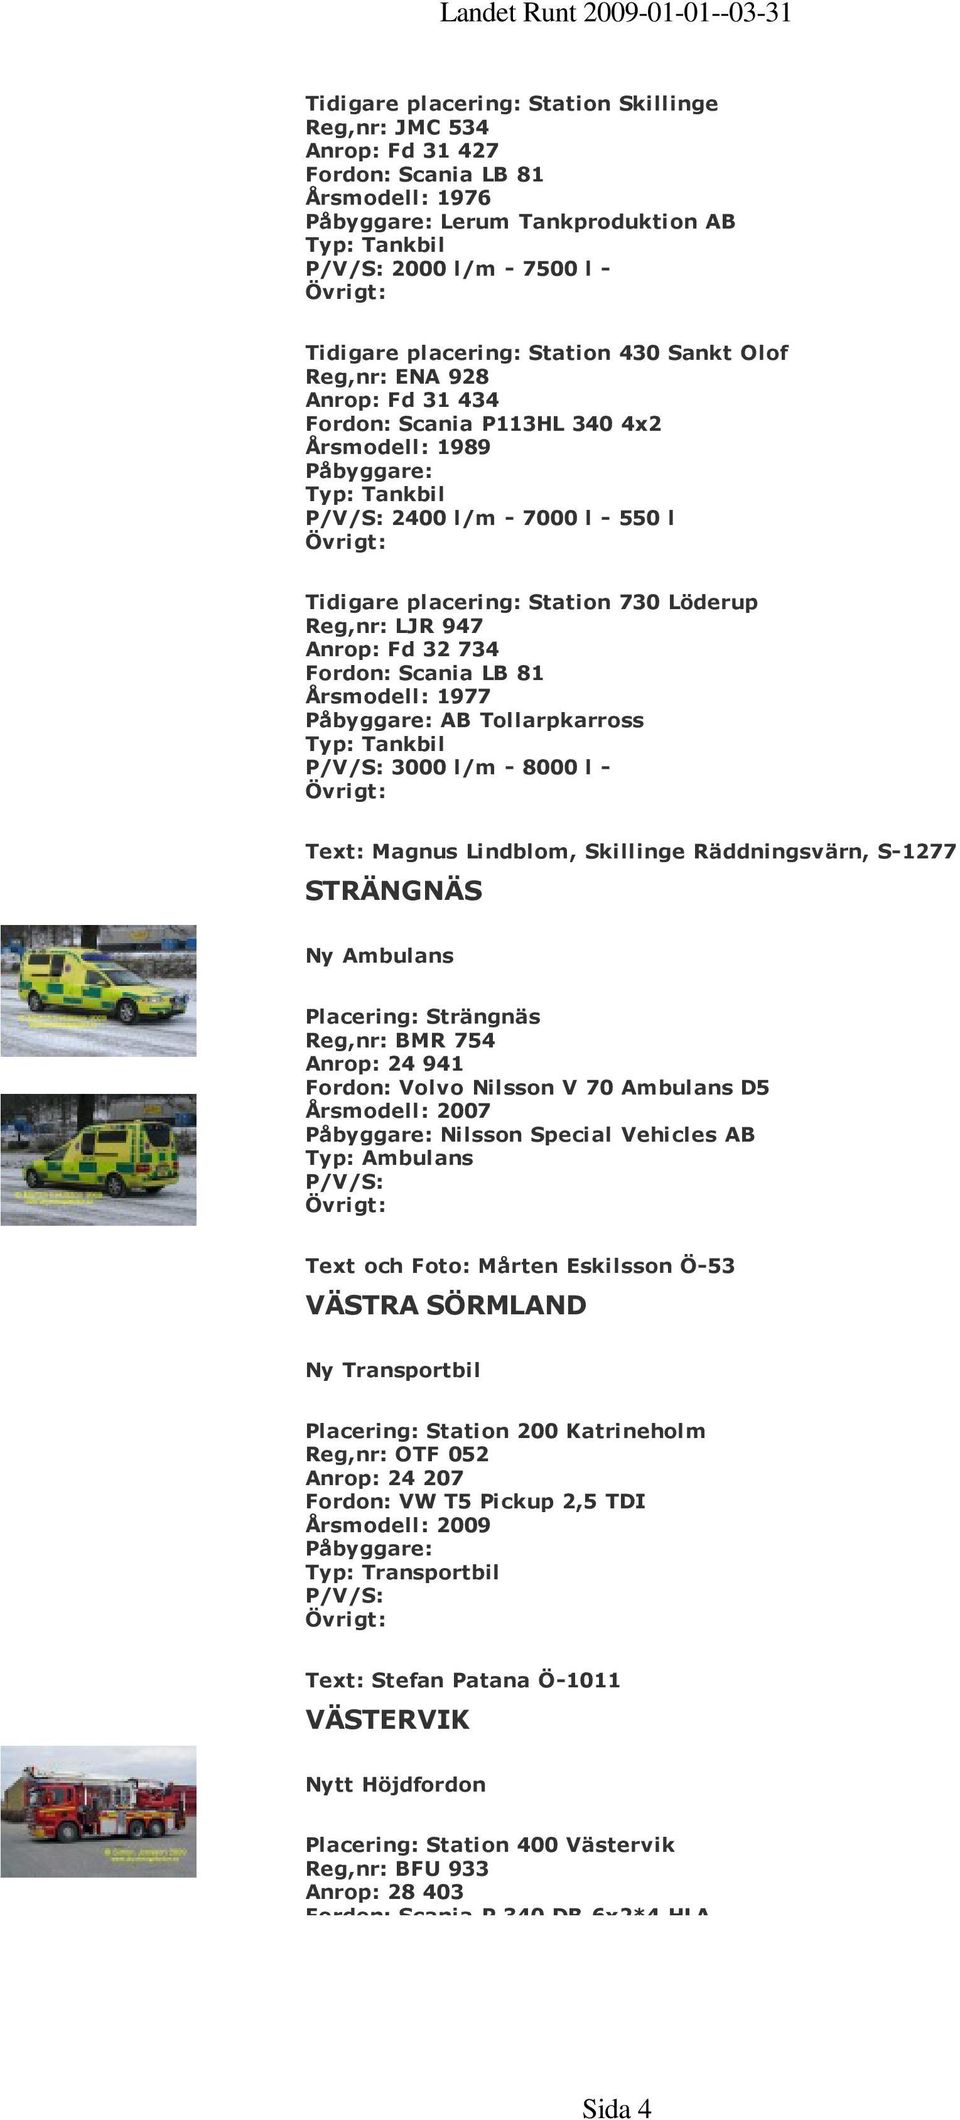 734 Fordon: Scania LB 81 Årsmodell: 1977 AB Tollarpkarross Typ: Tankbil 3000 l/m - 8000 l - Text: Magnus Lindblom, Skillinge Räddningsvärn, S-1277 STRÄNGNÄS Ny Ambulans Placering: Strängnäs Reg,nr: